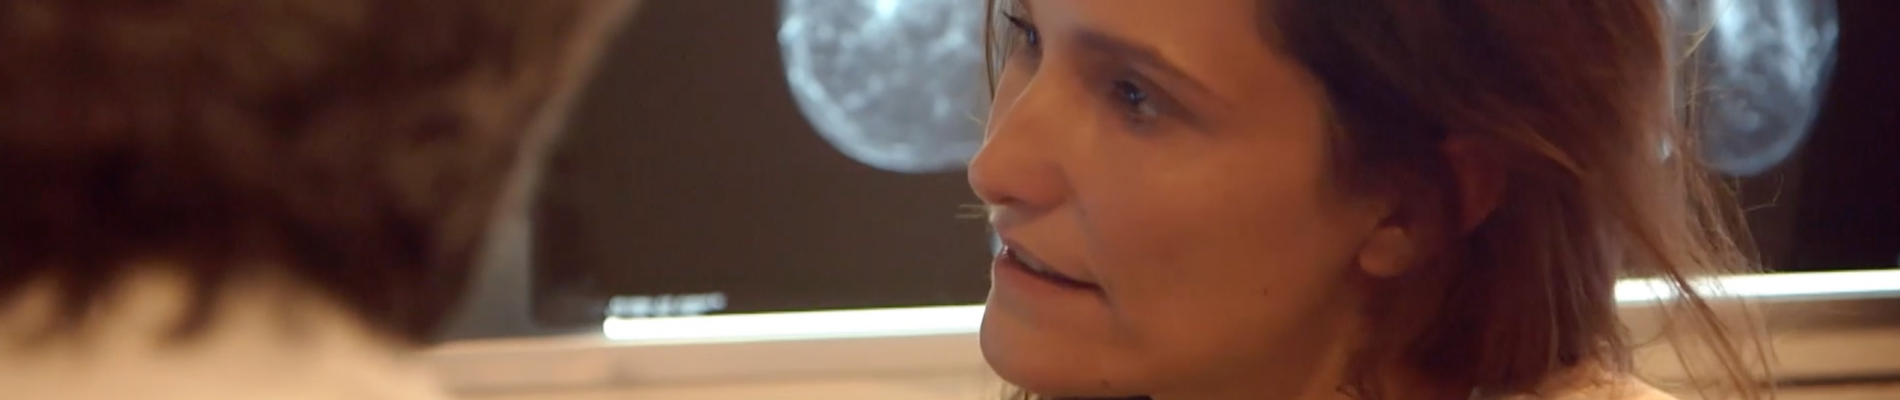 France2 : Alexandra Hubin embarque une caméra pour partager sa première mammographie